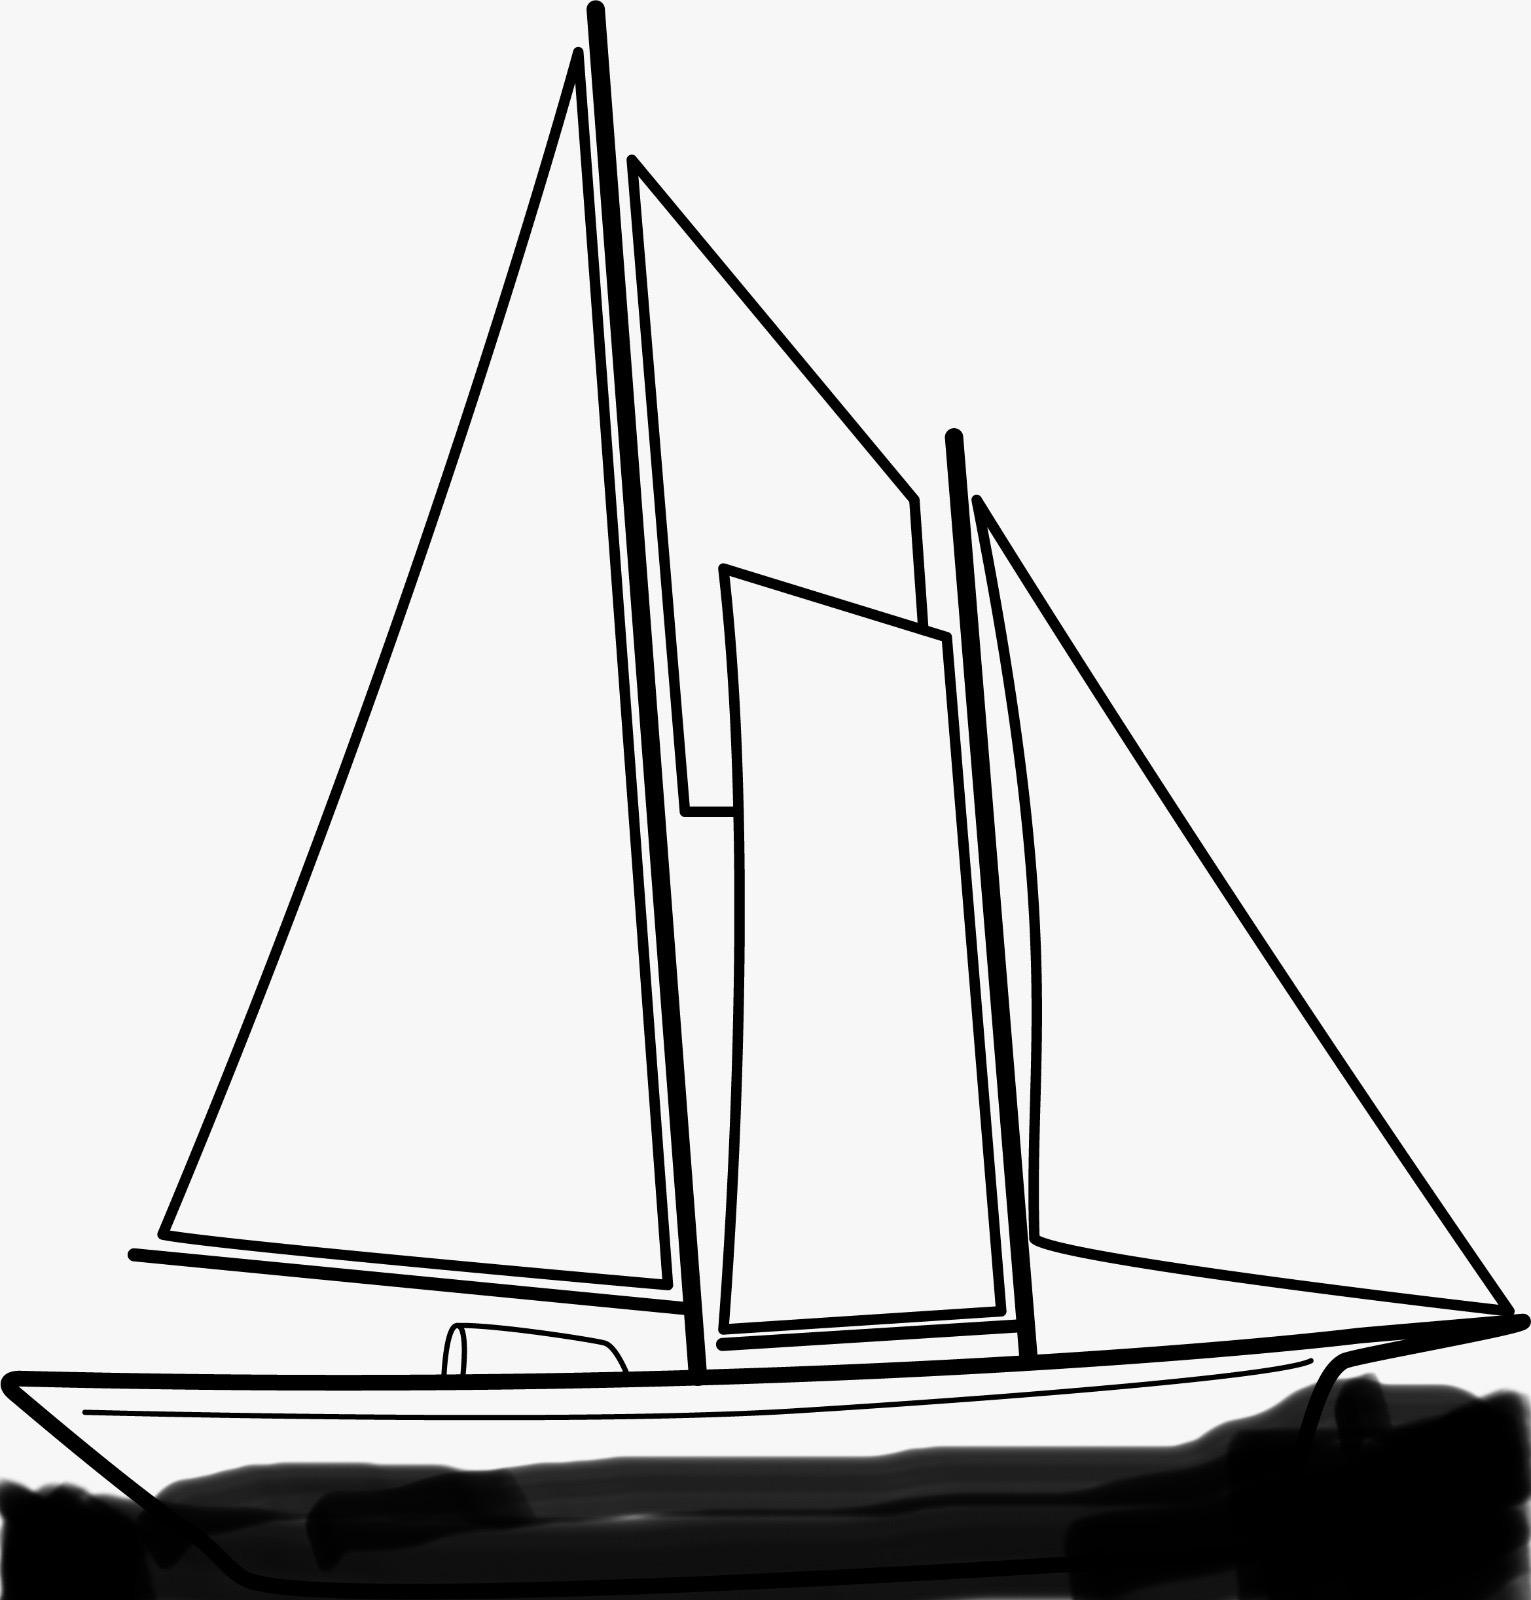 "Roberta III" Yacht